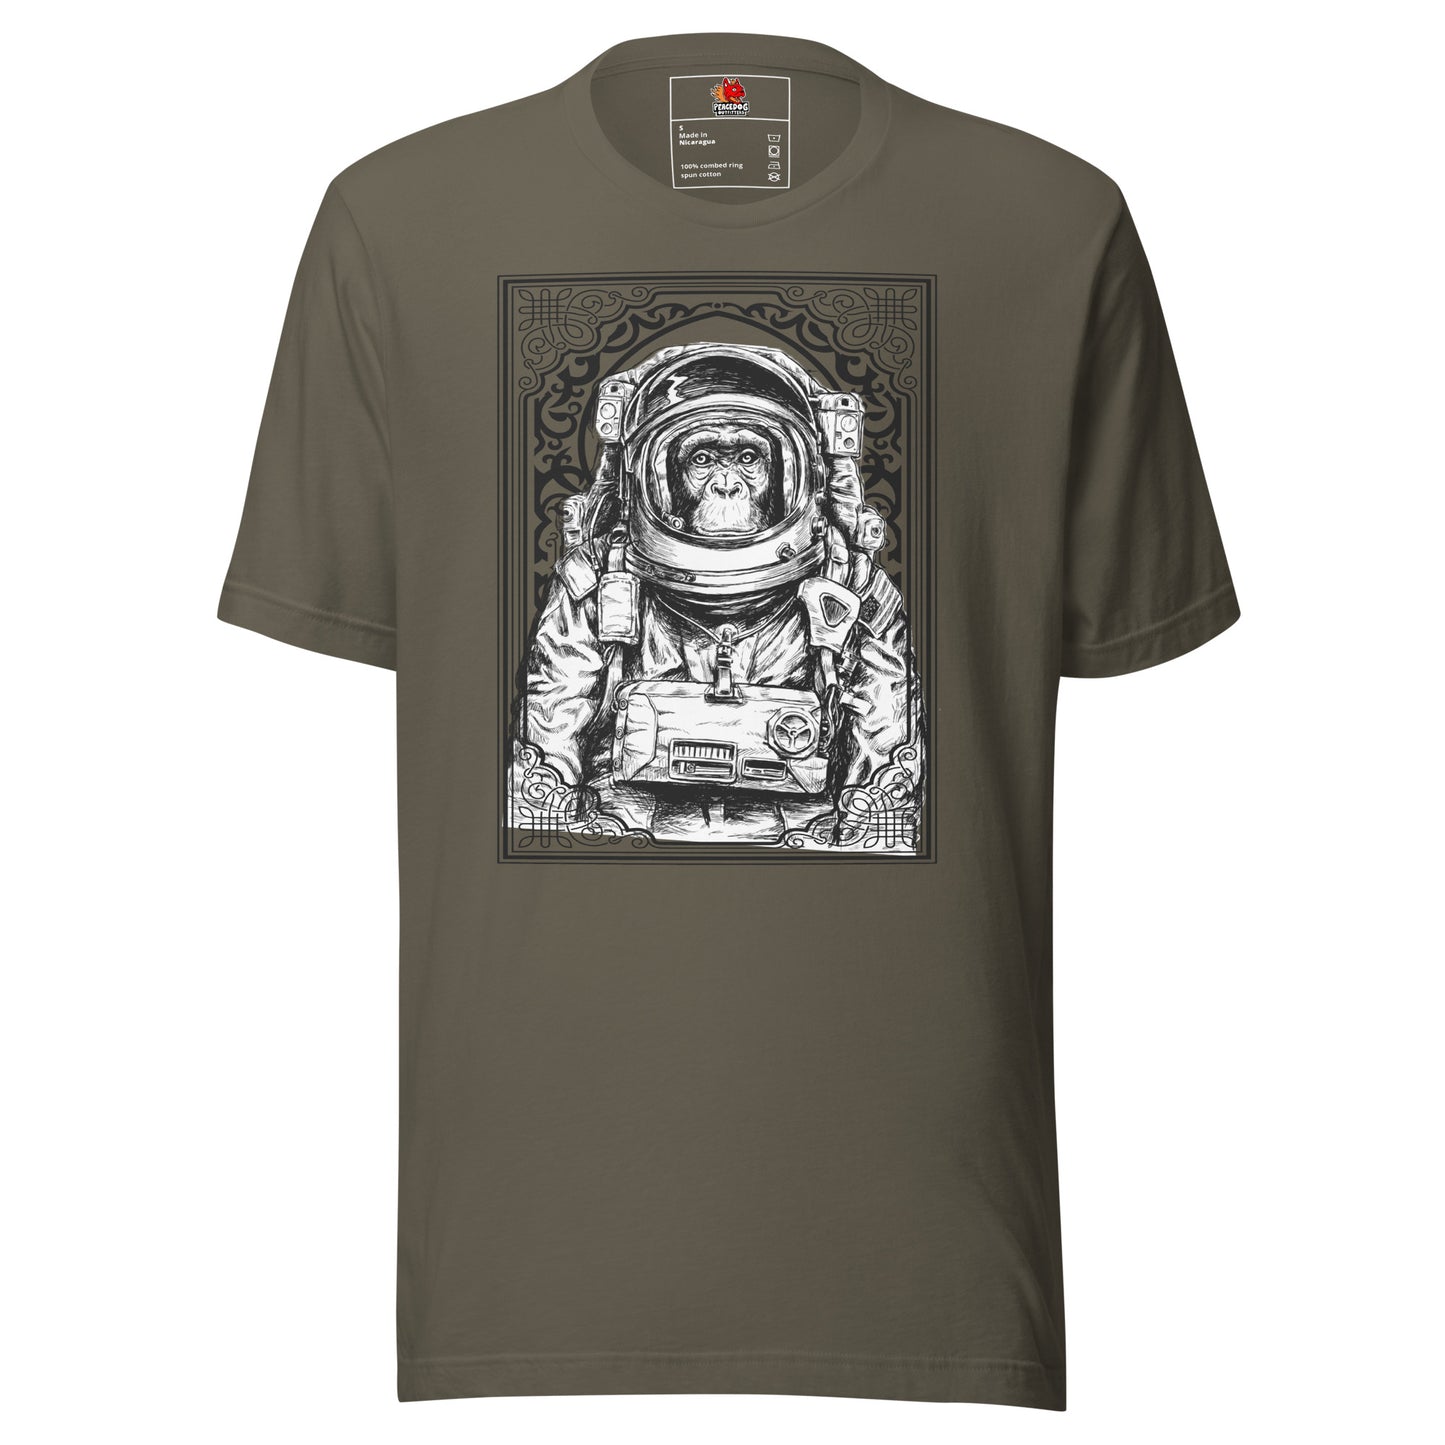 Space Chimp Astronaut T-shirt